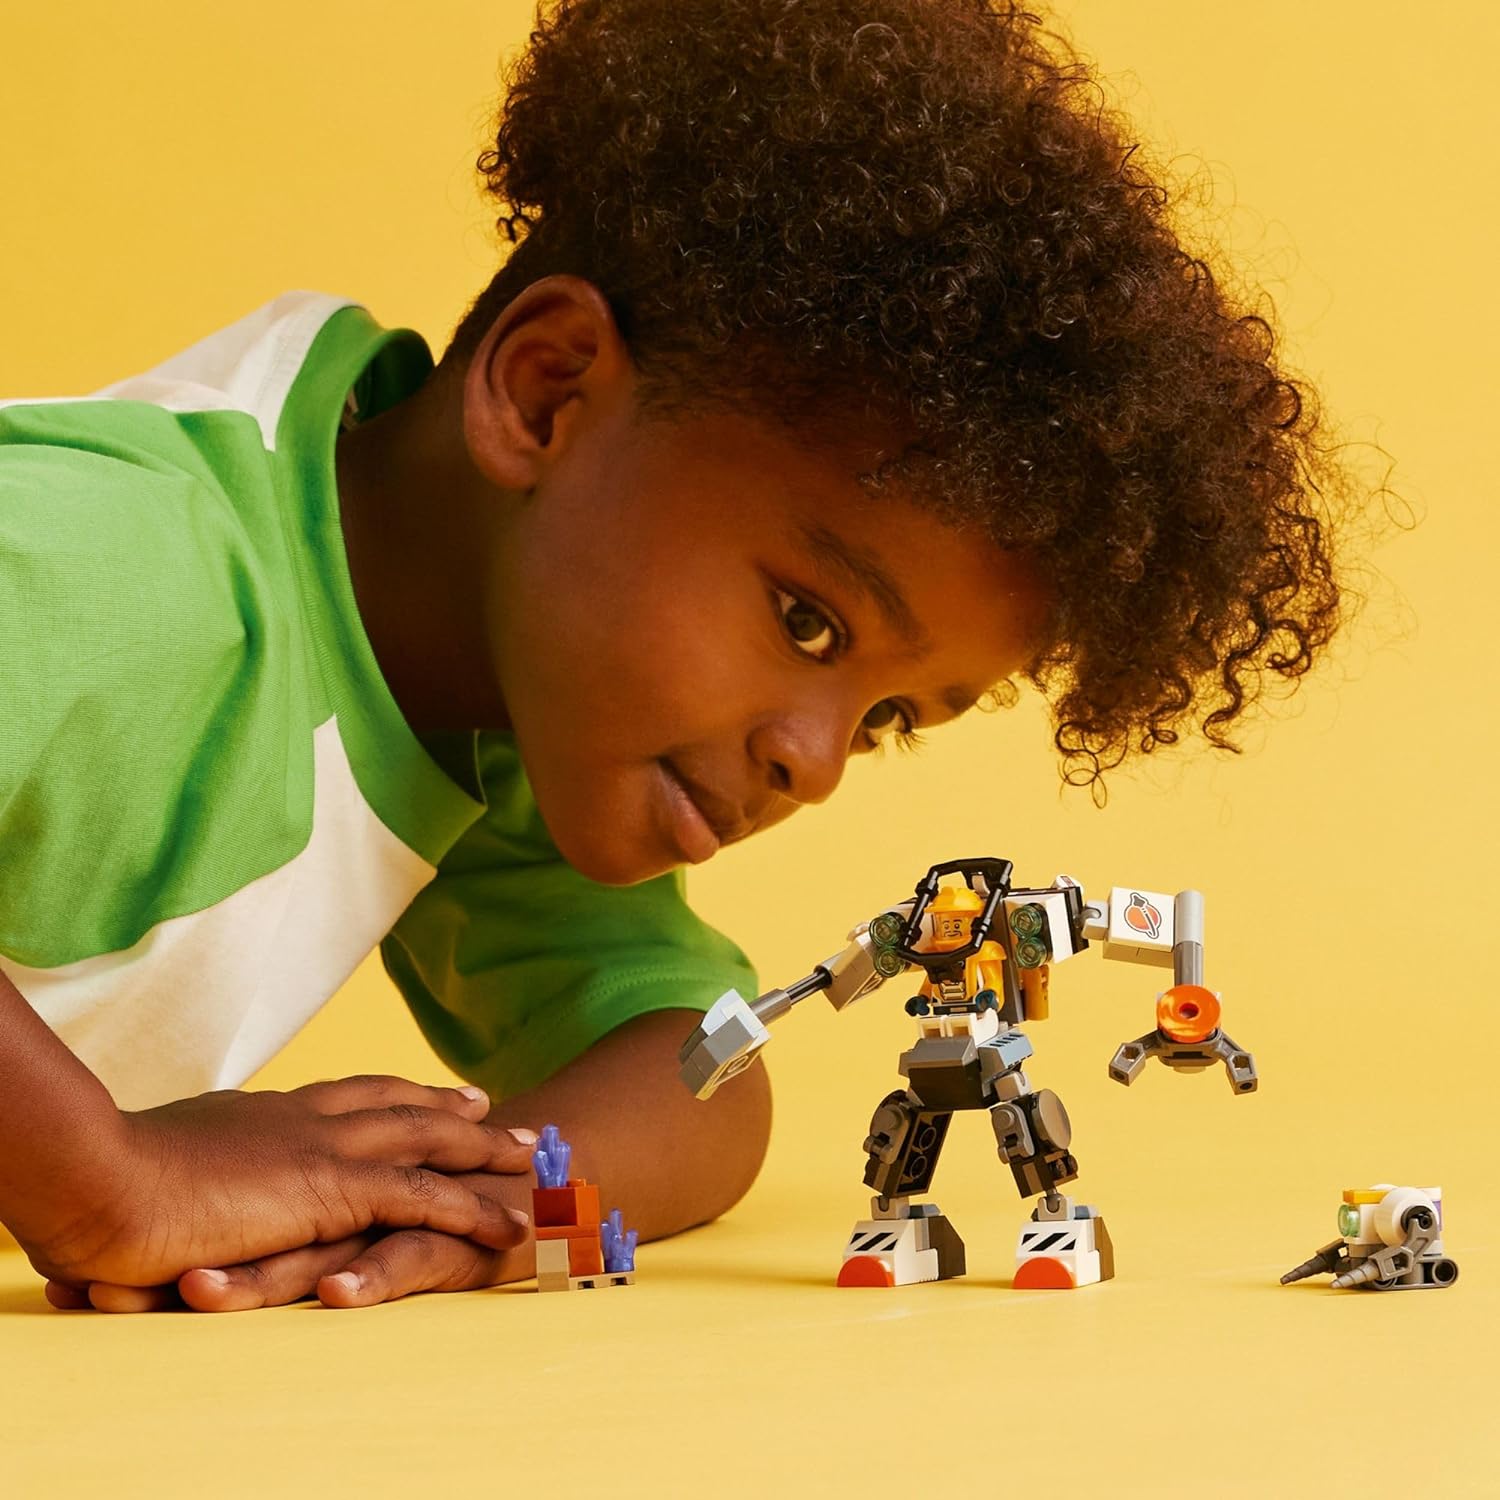 مجموعة بناء البدلة الميكانيكية لبناء مدينة الفضاء من ليجو 60428، لعبة فضاء ممتعة للأطفال من سن 6 سنوات فما فوق، فكرة هدية فضائية للأولاد والبنات الذين يحبون اللعب الخيالي، تتضمن شخصية طيار صغيرة ولعبة روبوت.